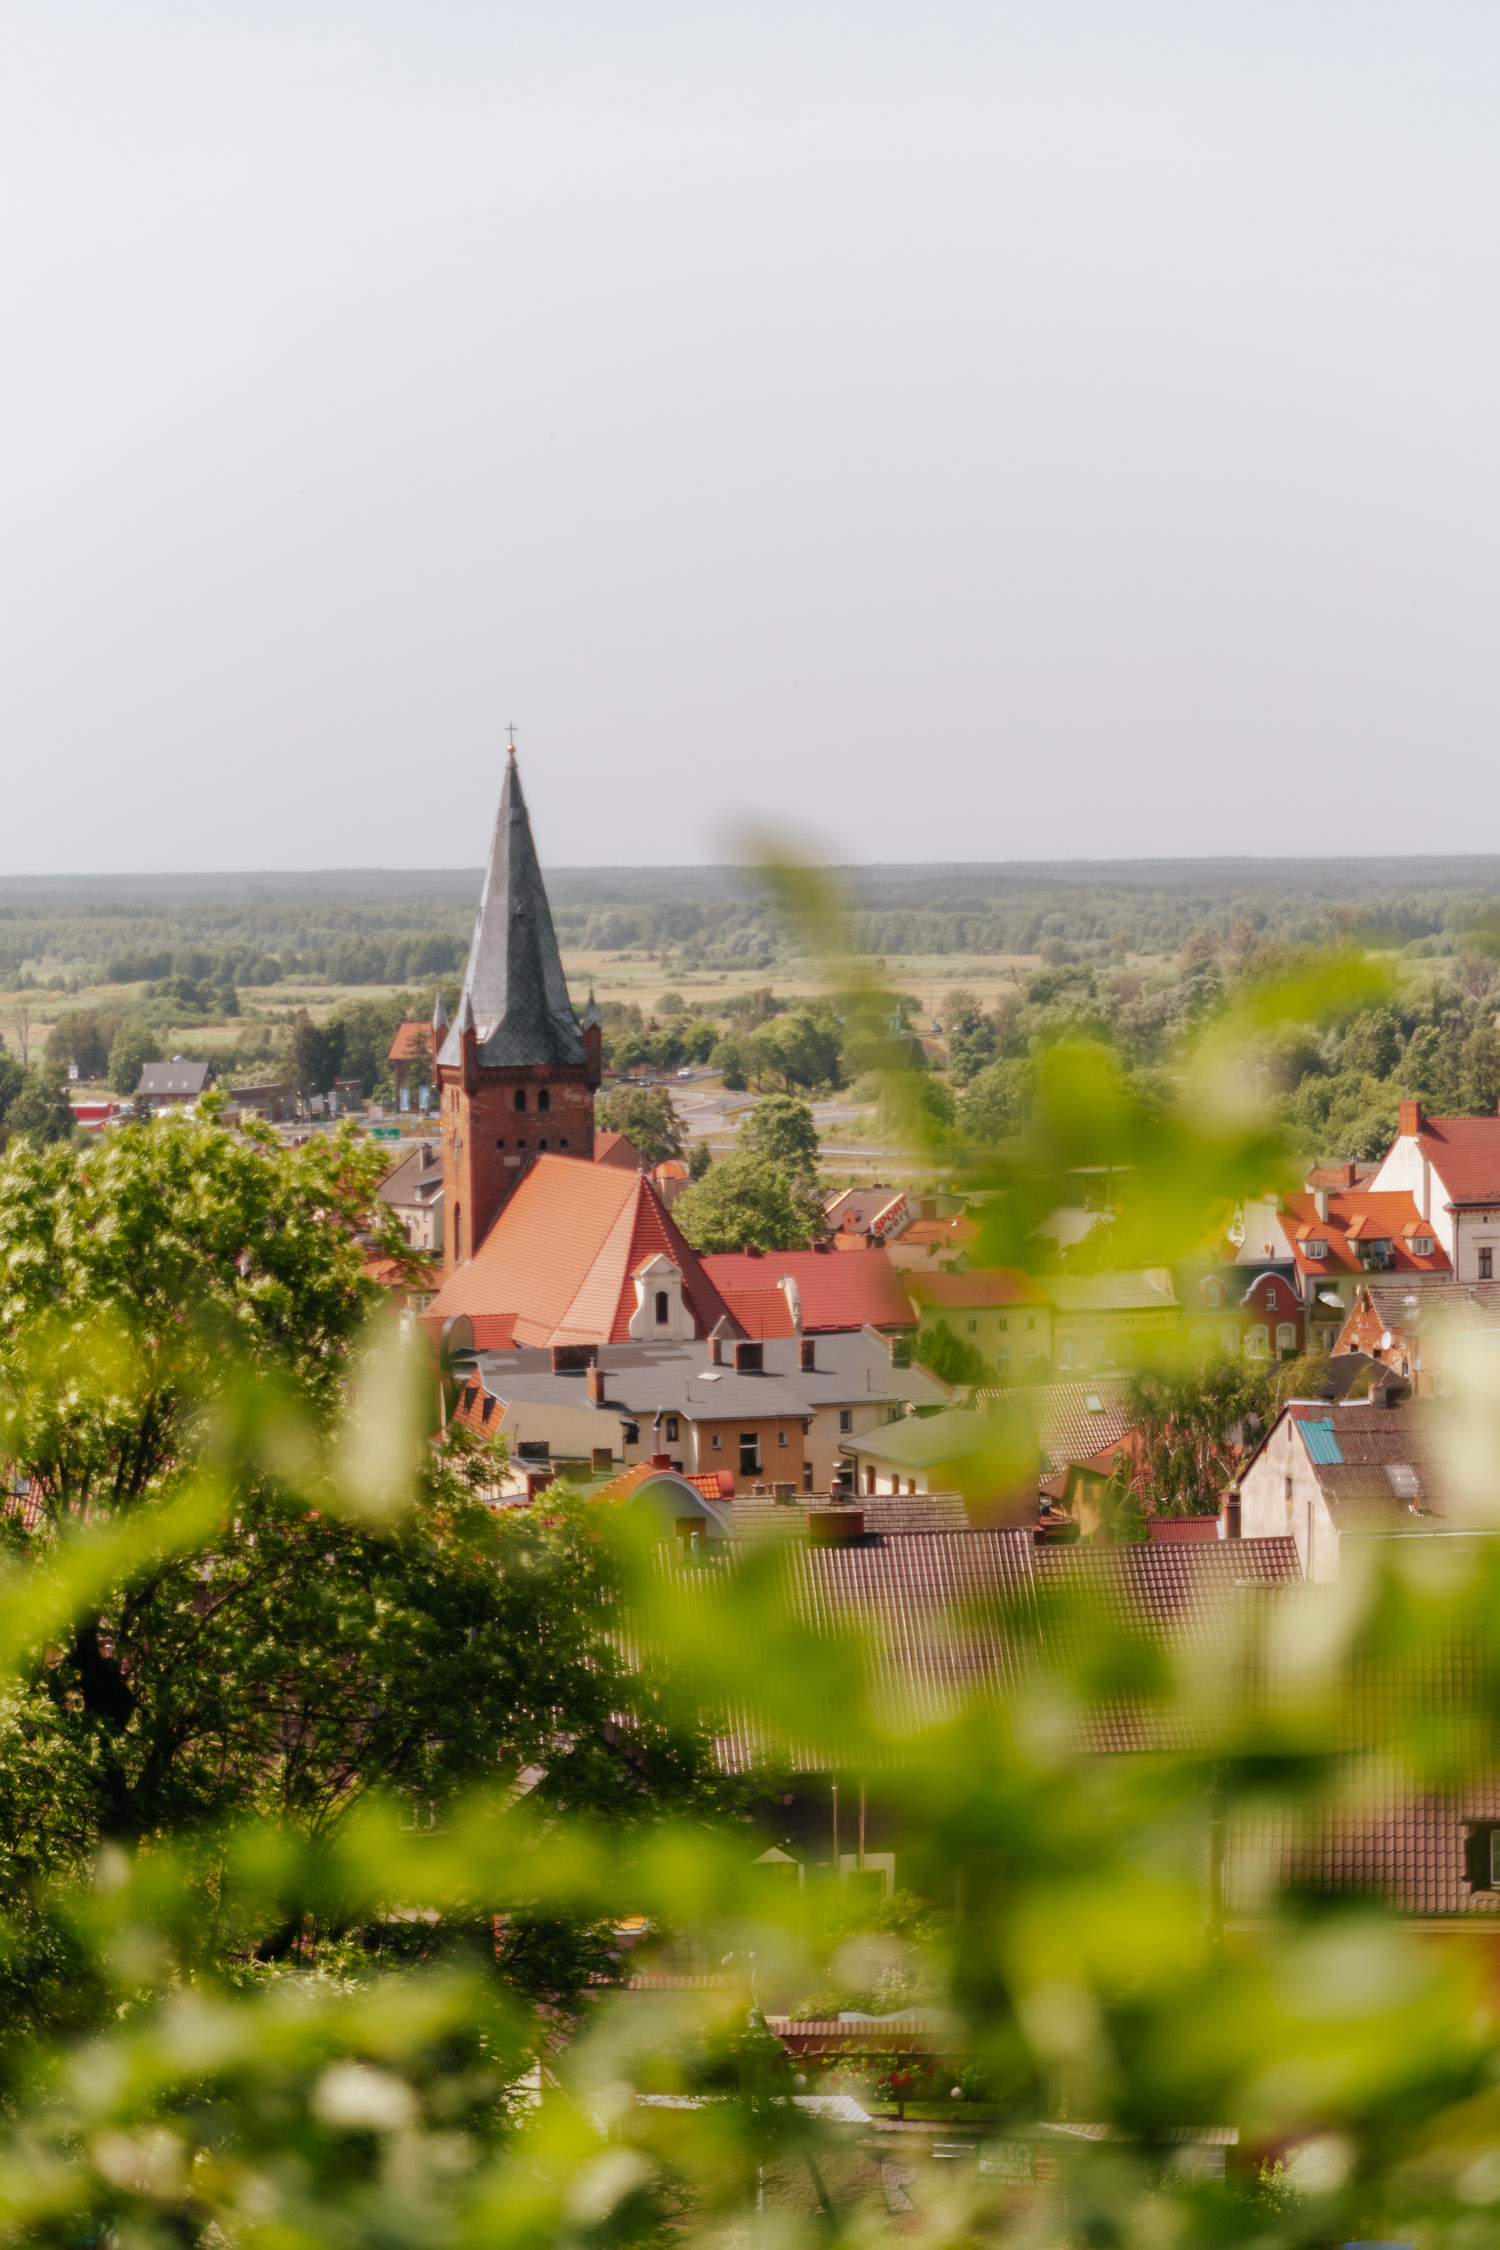 View of Czarnków in Wielkopolska.